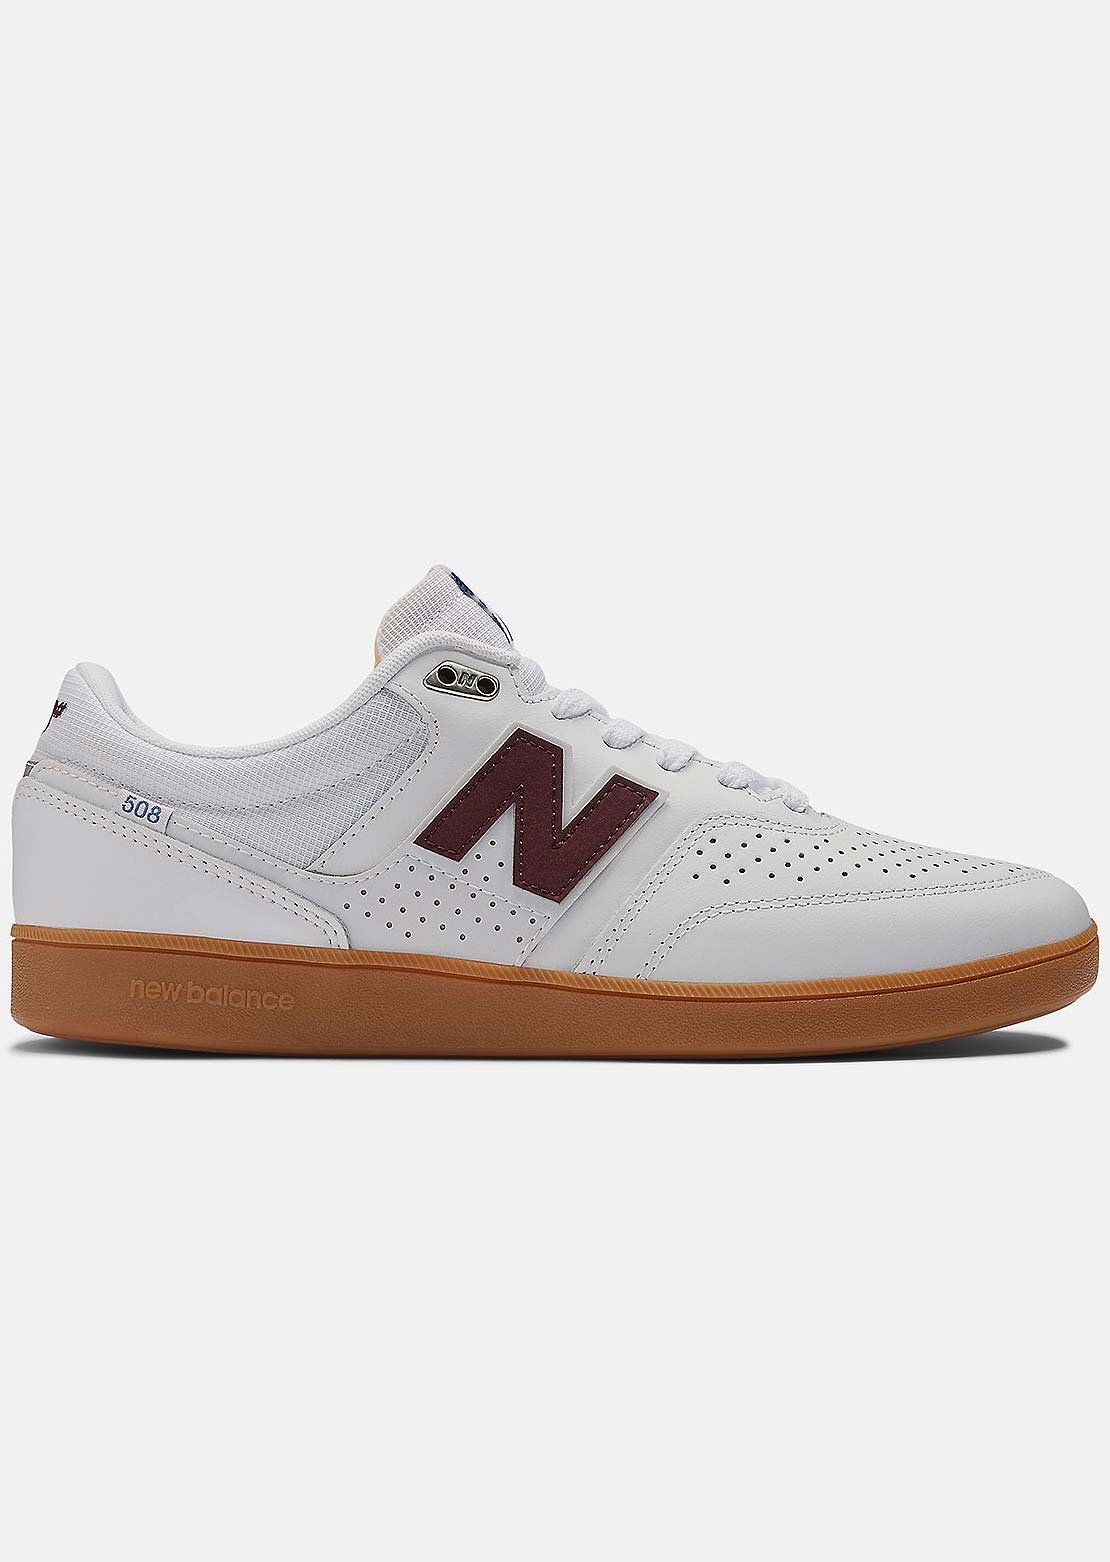 New Balance Numeric Men&#39;s 508 Westgate Shoes White/Gum